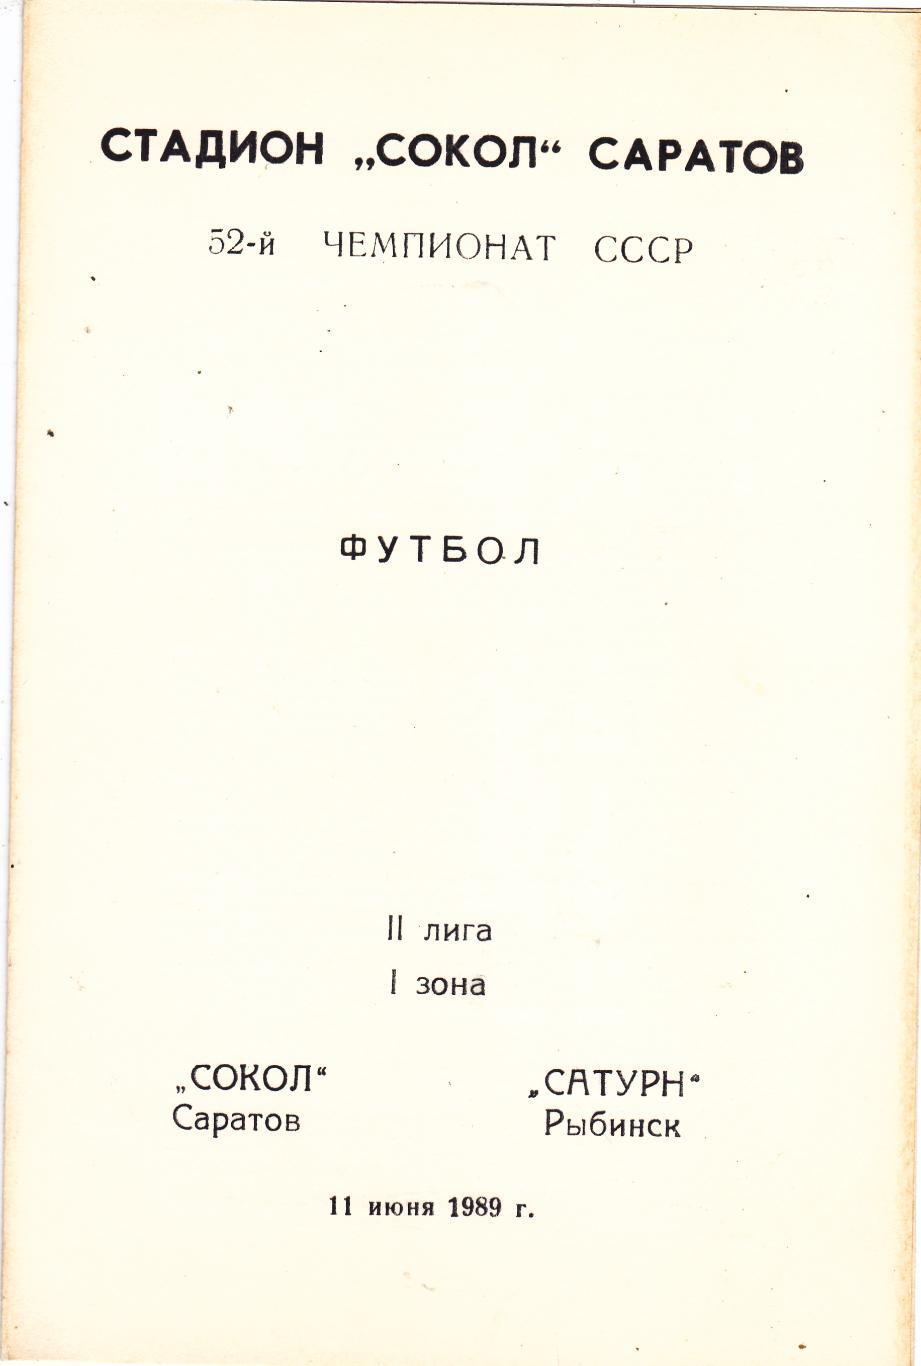 Сокол (Саратов) - Сатурн (Рыбинск) 11.06.1989